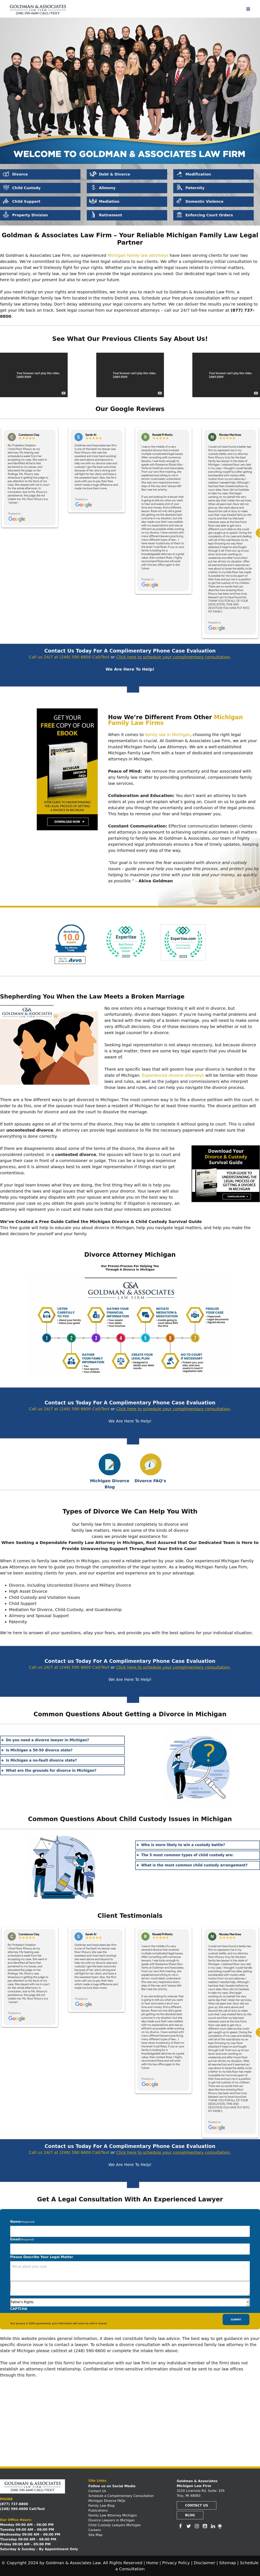 Goldman & Associates - (877) 737-8800 - Detroit MI Lawyers